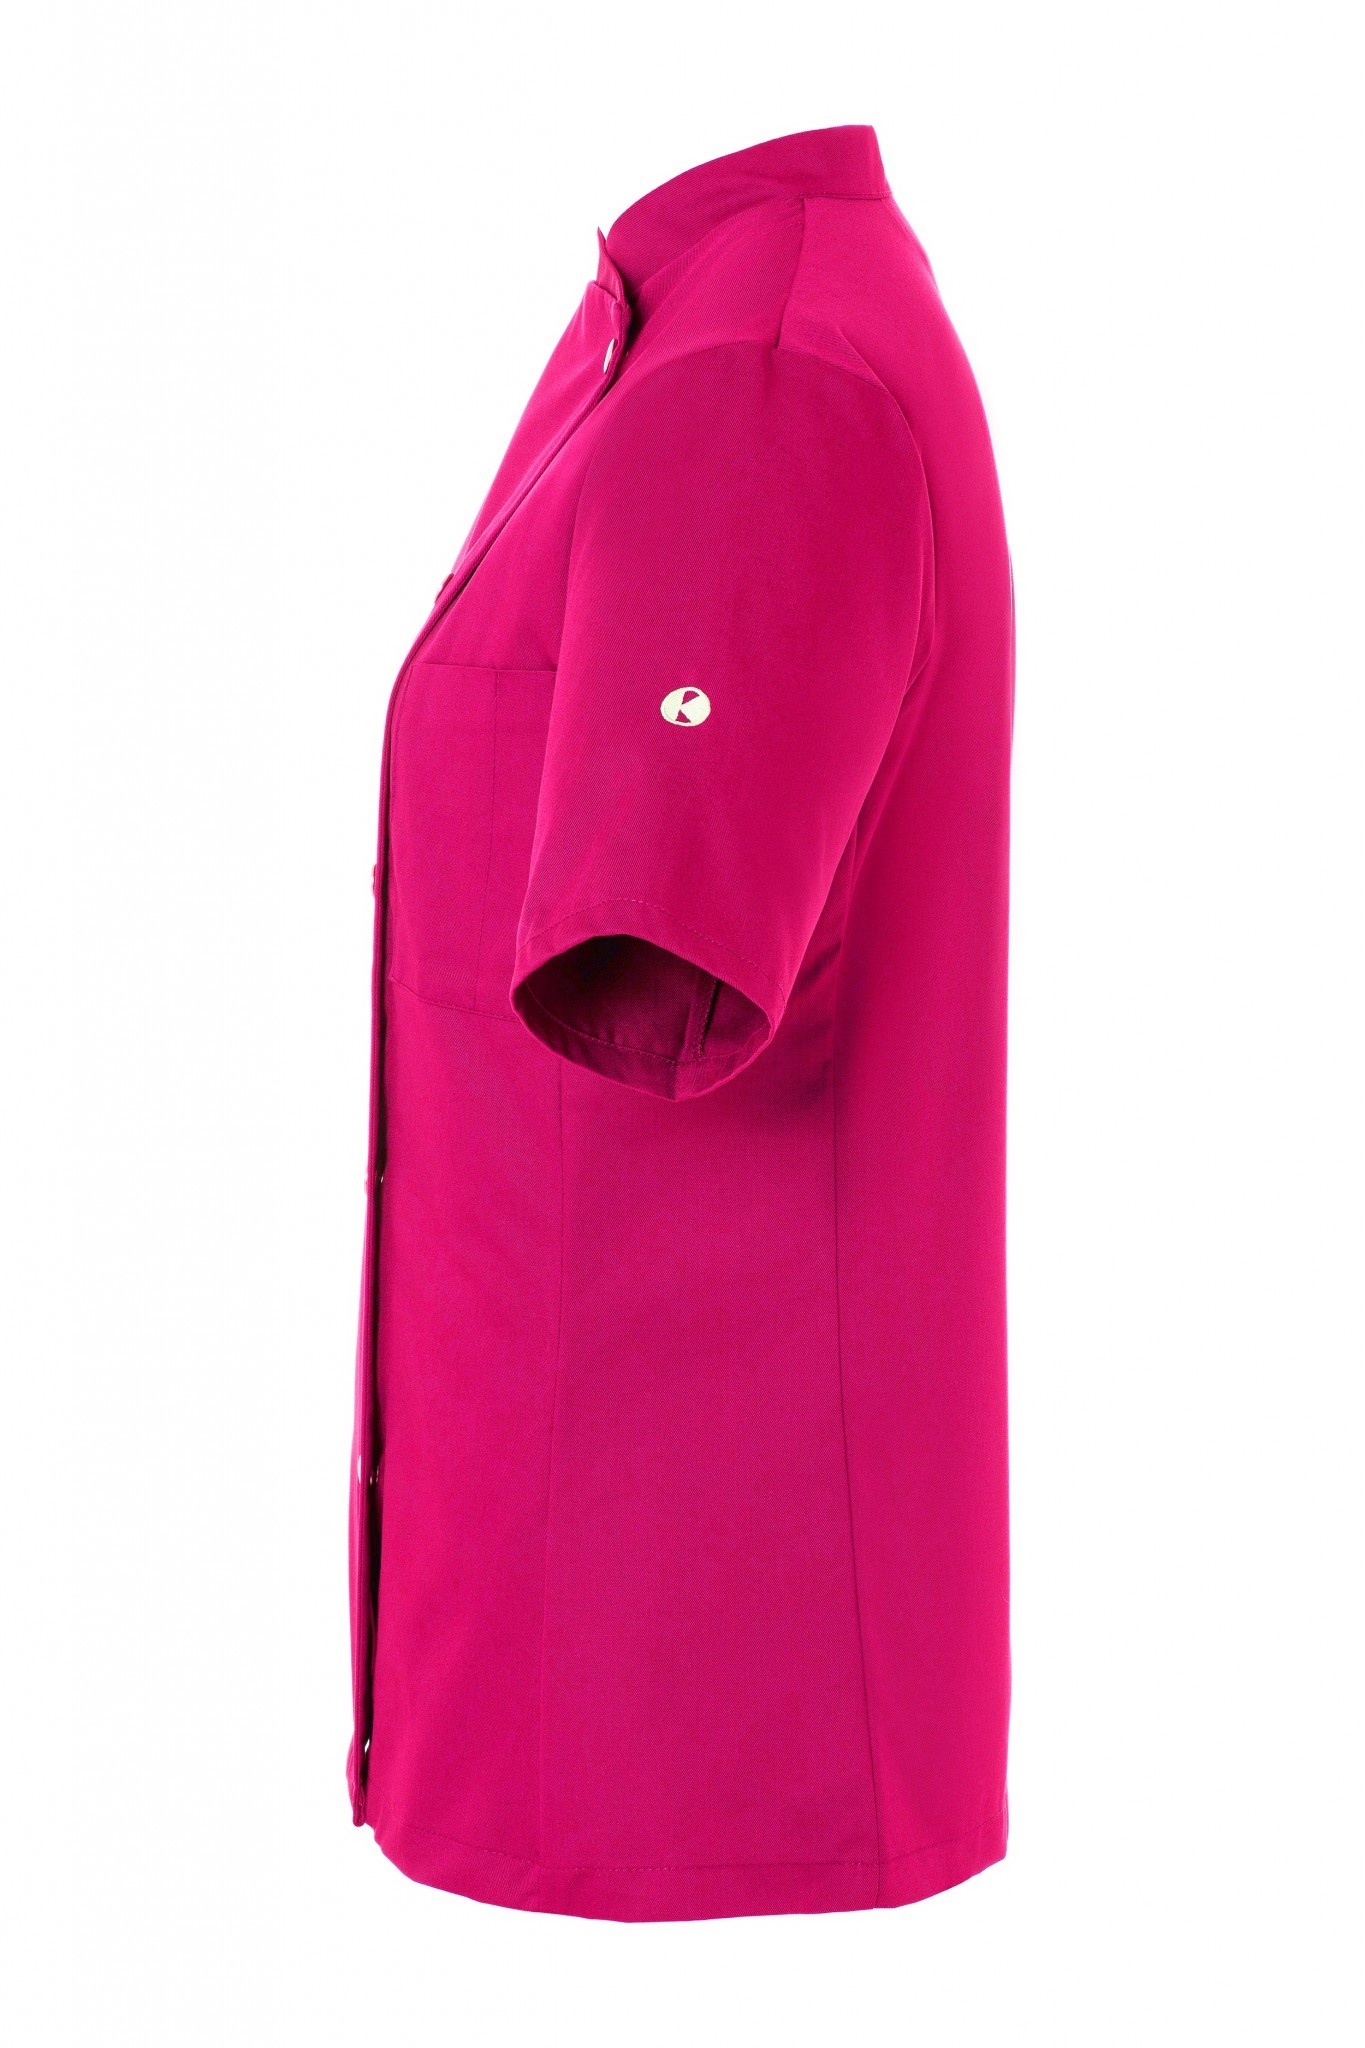 Damenkochjacke Greta | Pink | 65% Polyester / 35% Baumwolle | Erhältlich in 9 Größen